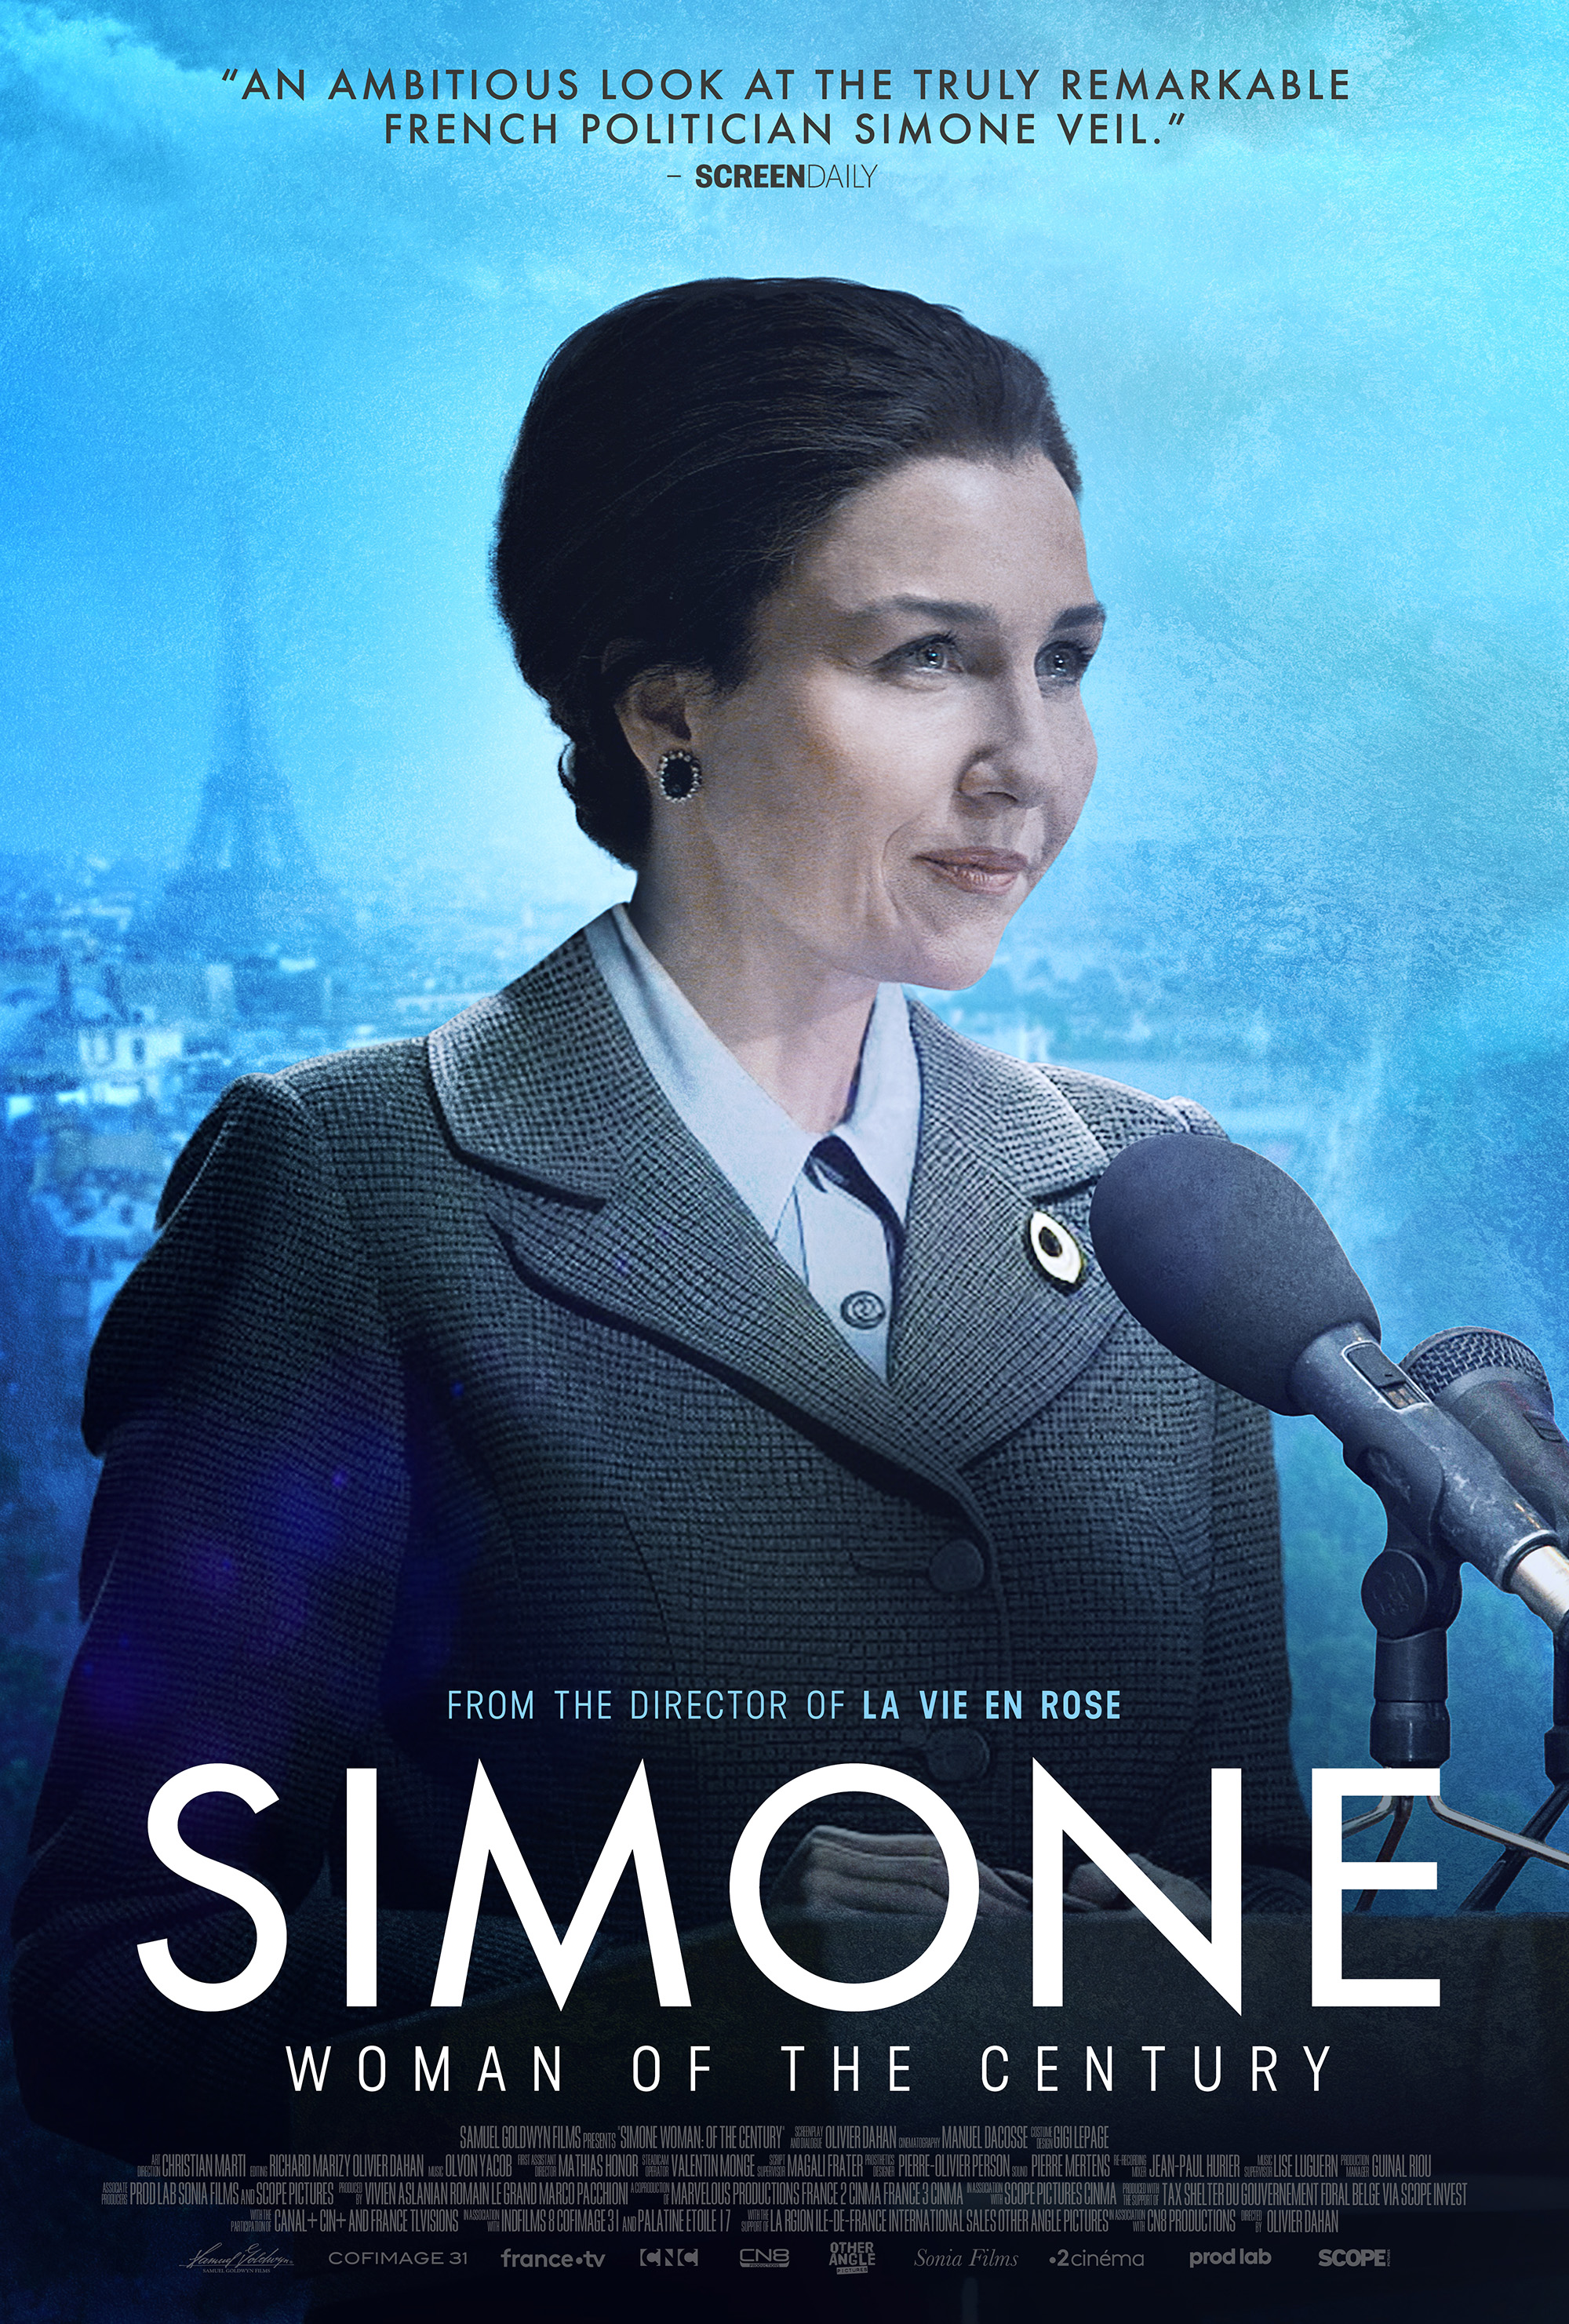 Simone, le voyage du siecle